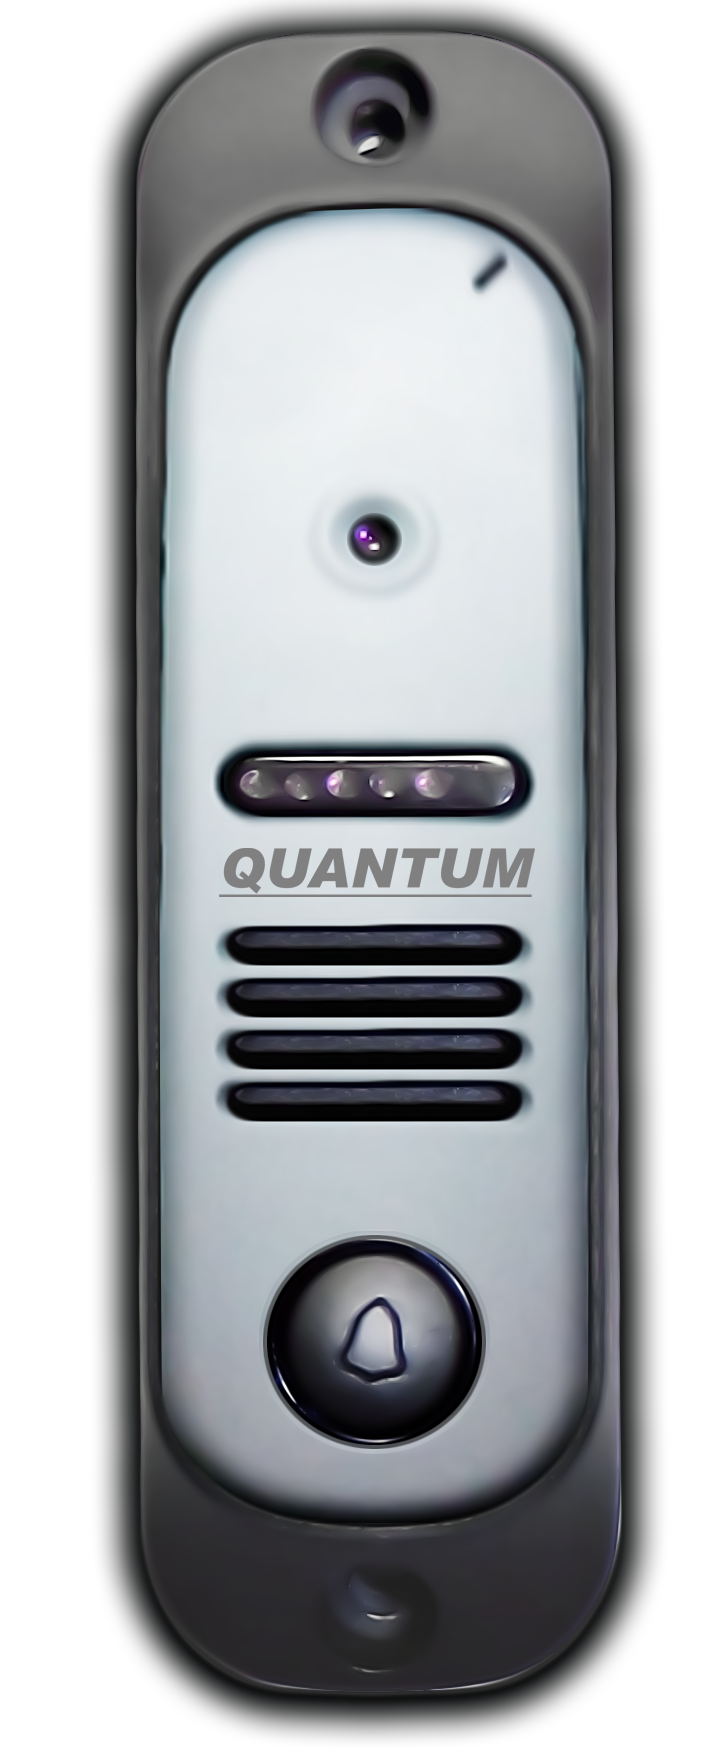 QM-307H (серебро) - купить в интернет магазине с доставкой, цены, описание, характеристики, отзывы